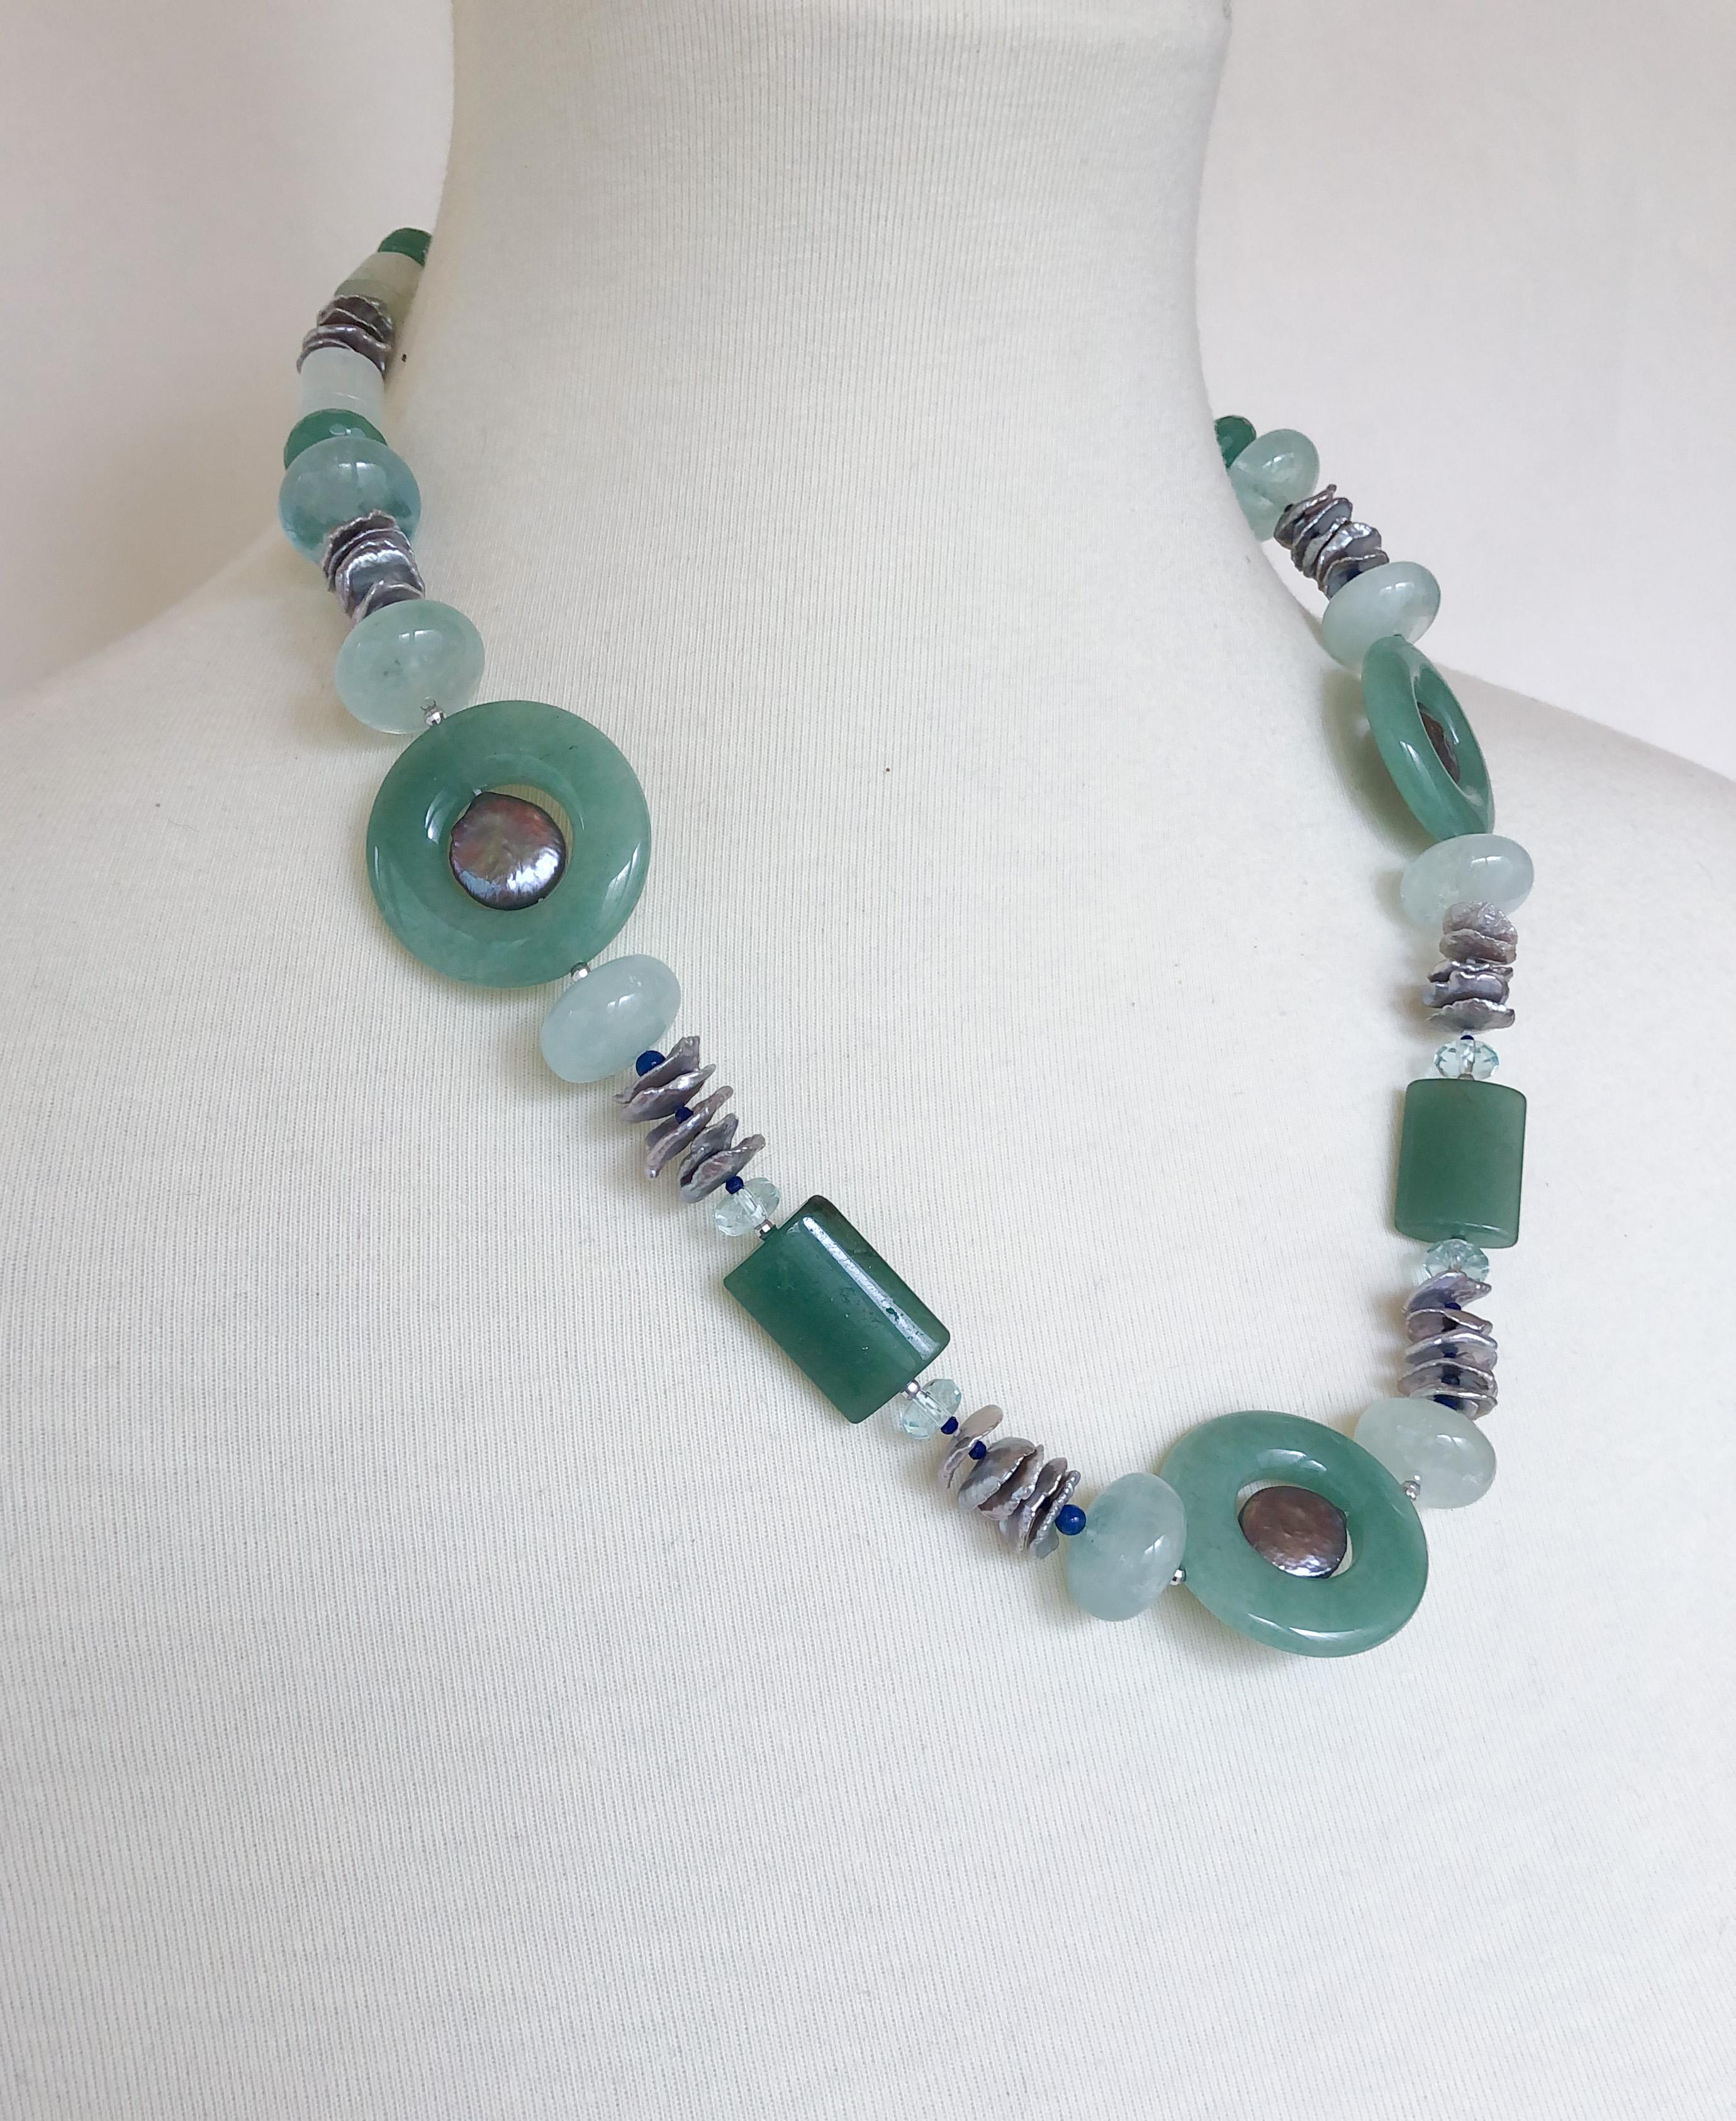 Diese Halskette besteht aus einem Jadering und Jadesteinen, Aquamarinsteinen und grünen Aventurinsteinen. Das prächtige Grün dieser Halskette wird durch graue Süßwasserperlen und winzige Lapislazuli-Perlen kontrastiert, die einen Farbakzent setzen.